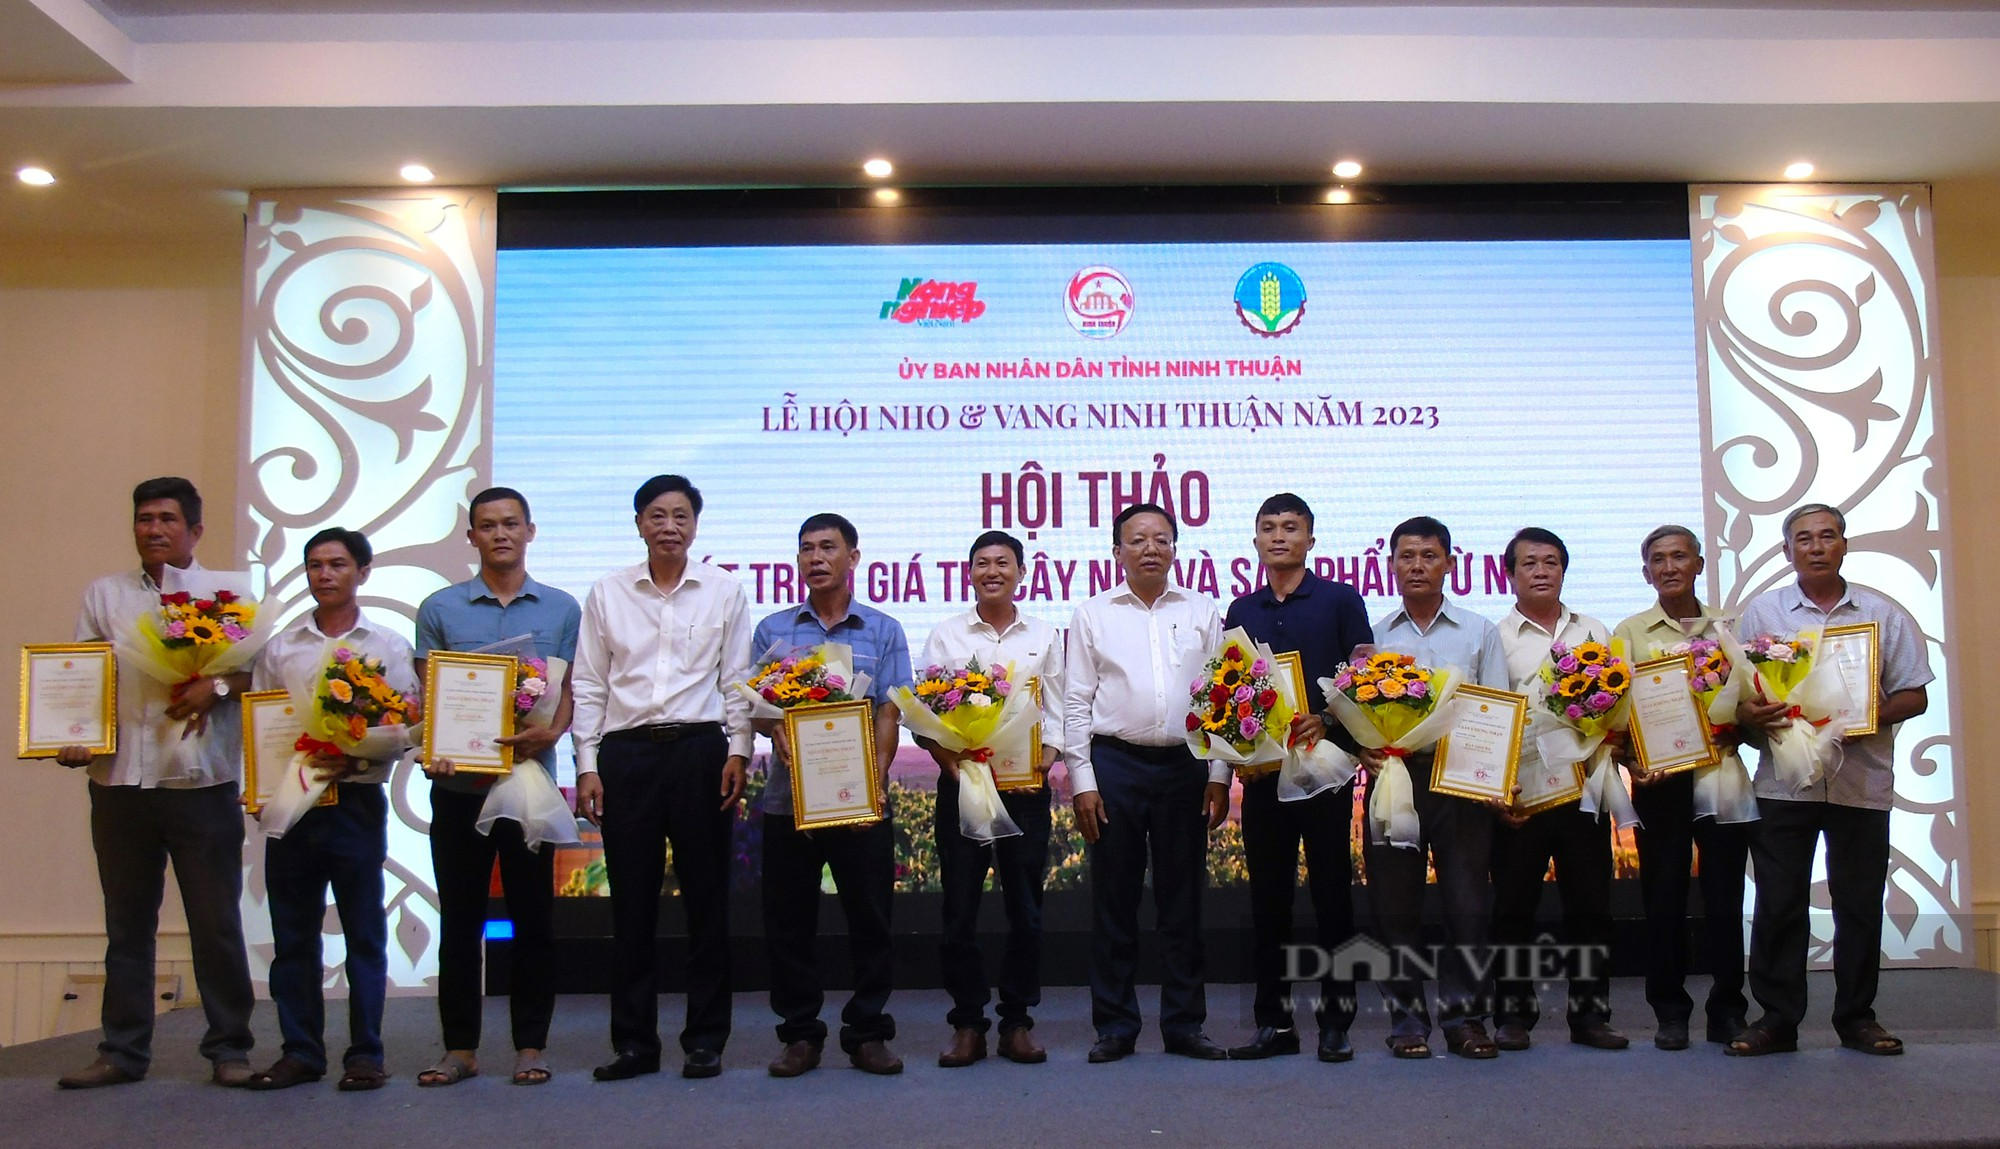 Vườn nho công nghệ cao đạt giải nhất cuộc thi “Giàn nho đẹp” tỉnh Ninh Thuận - Ảnh 1.